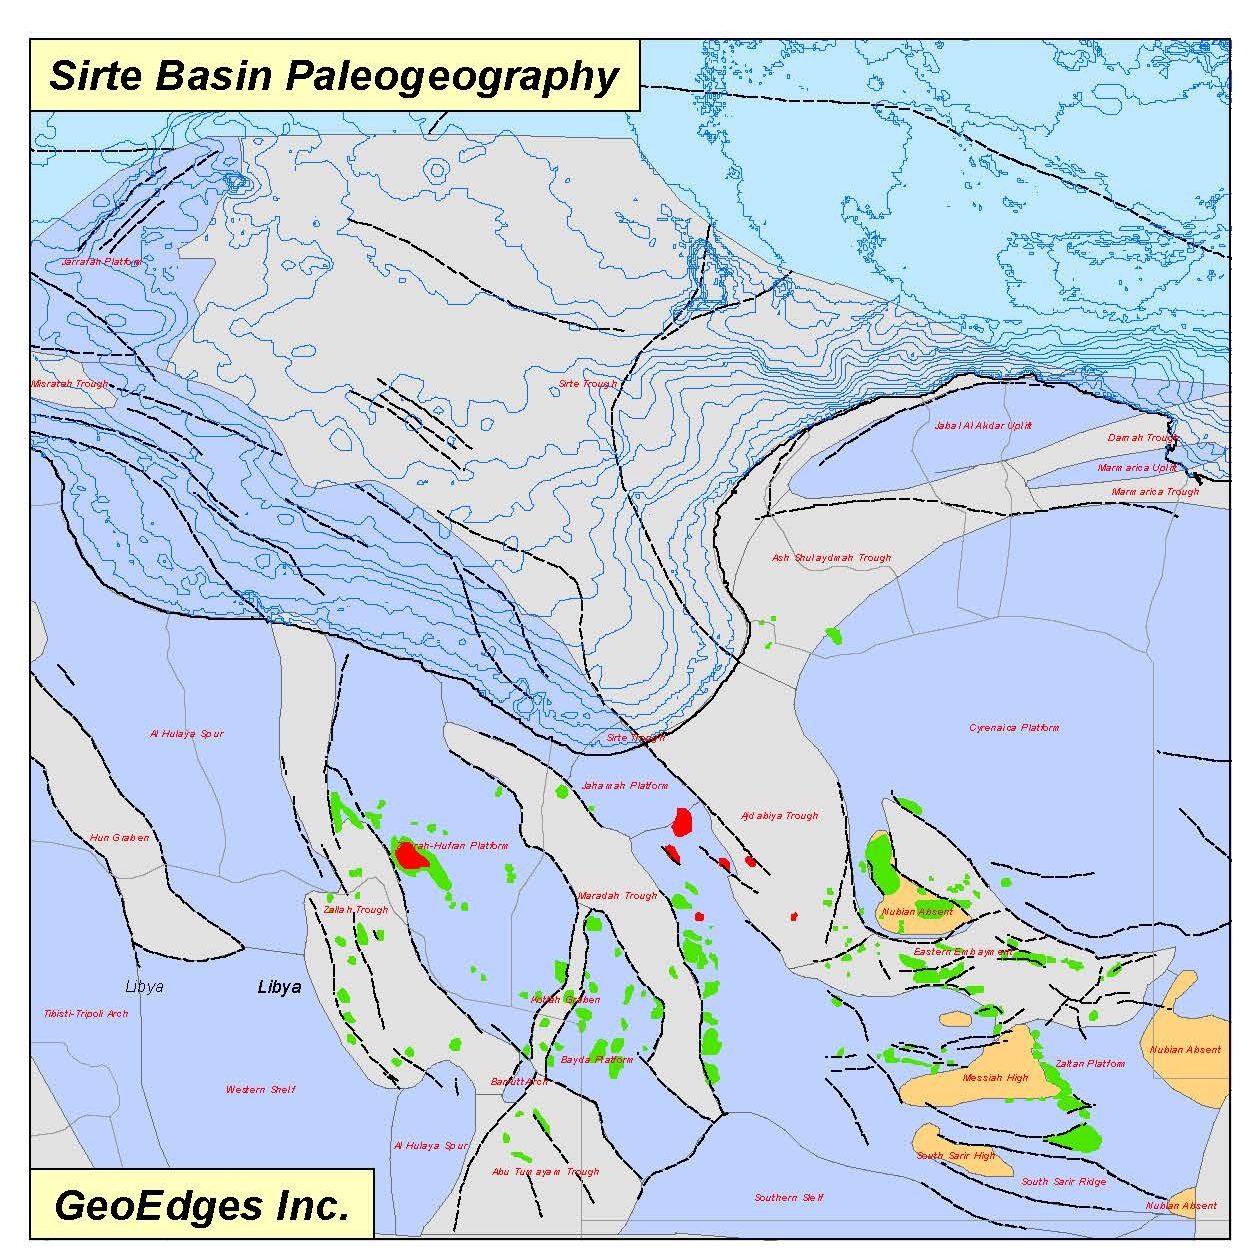 Sirte Basin Paleogeography.jpg